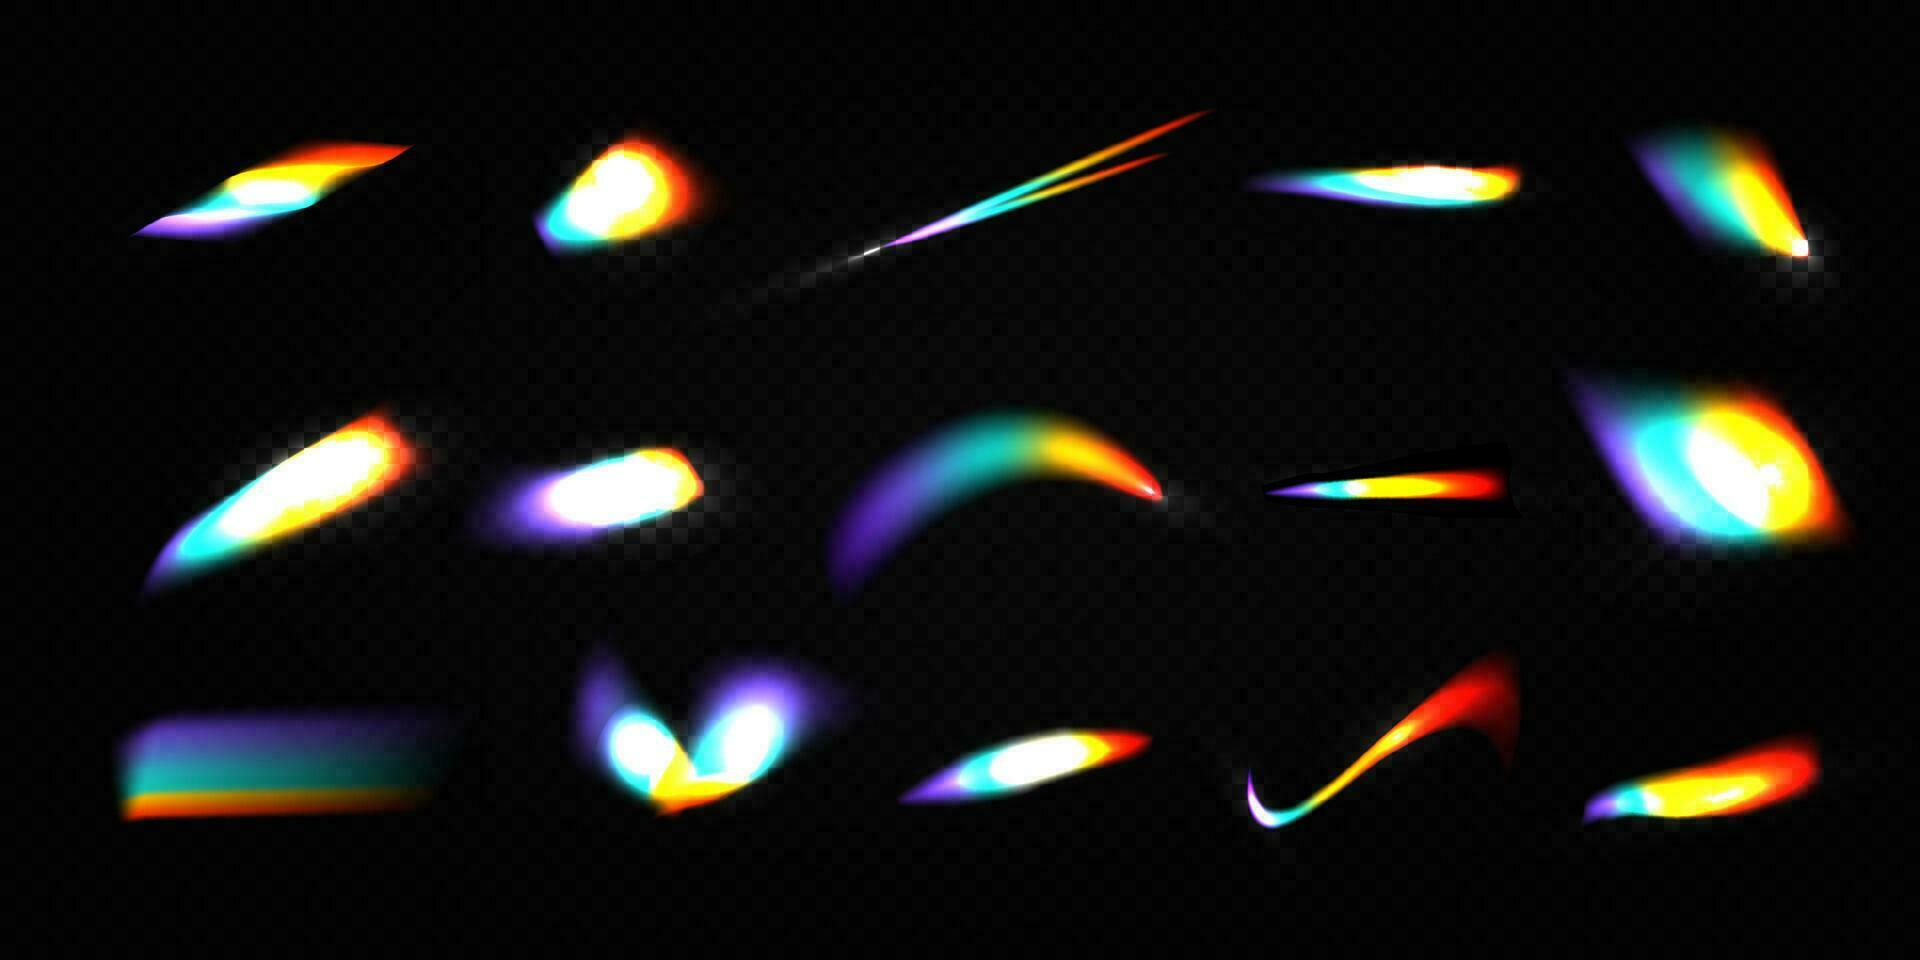 cristal arco Iris luz vazamento flare reflexão efeito vetor ilustração definir.